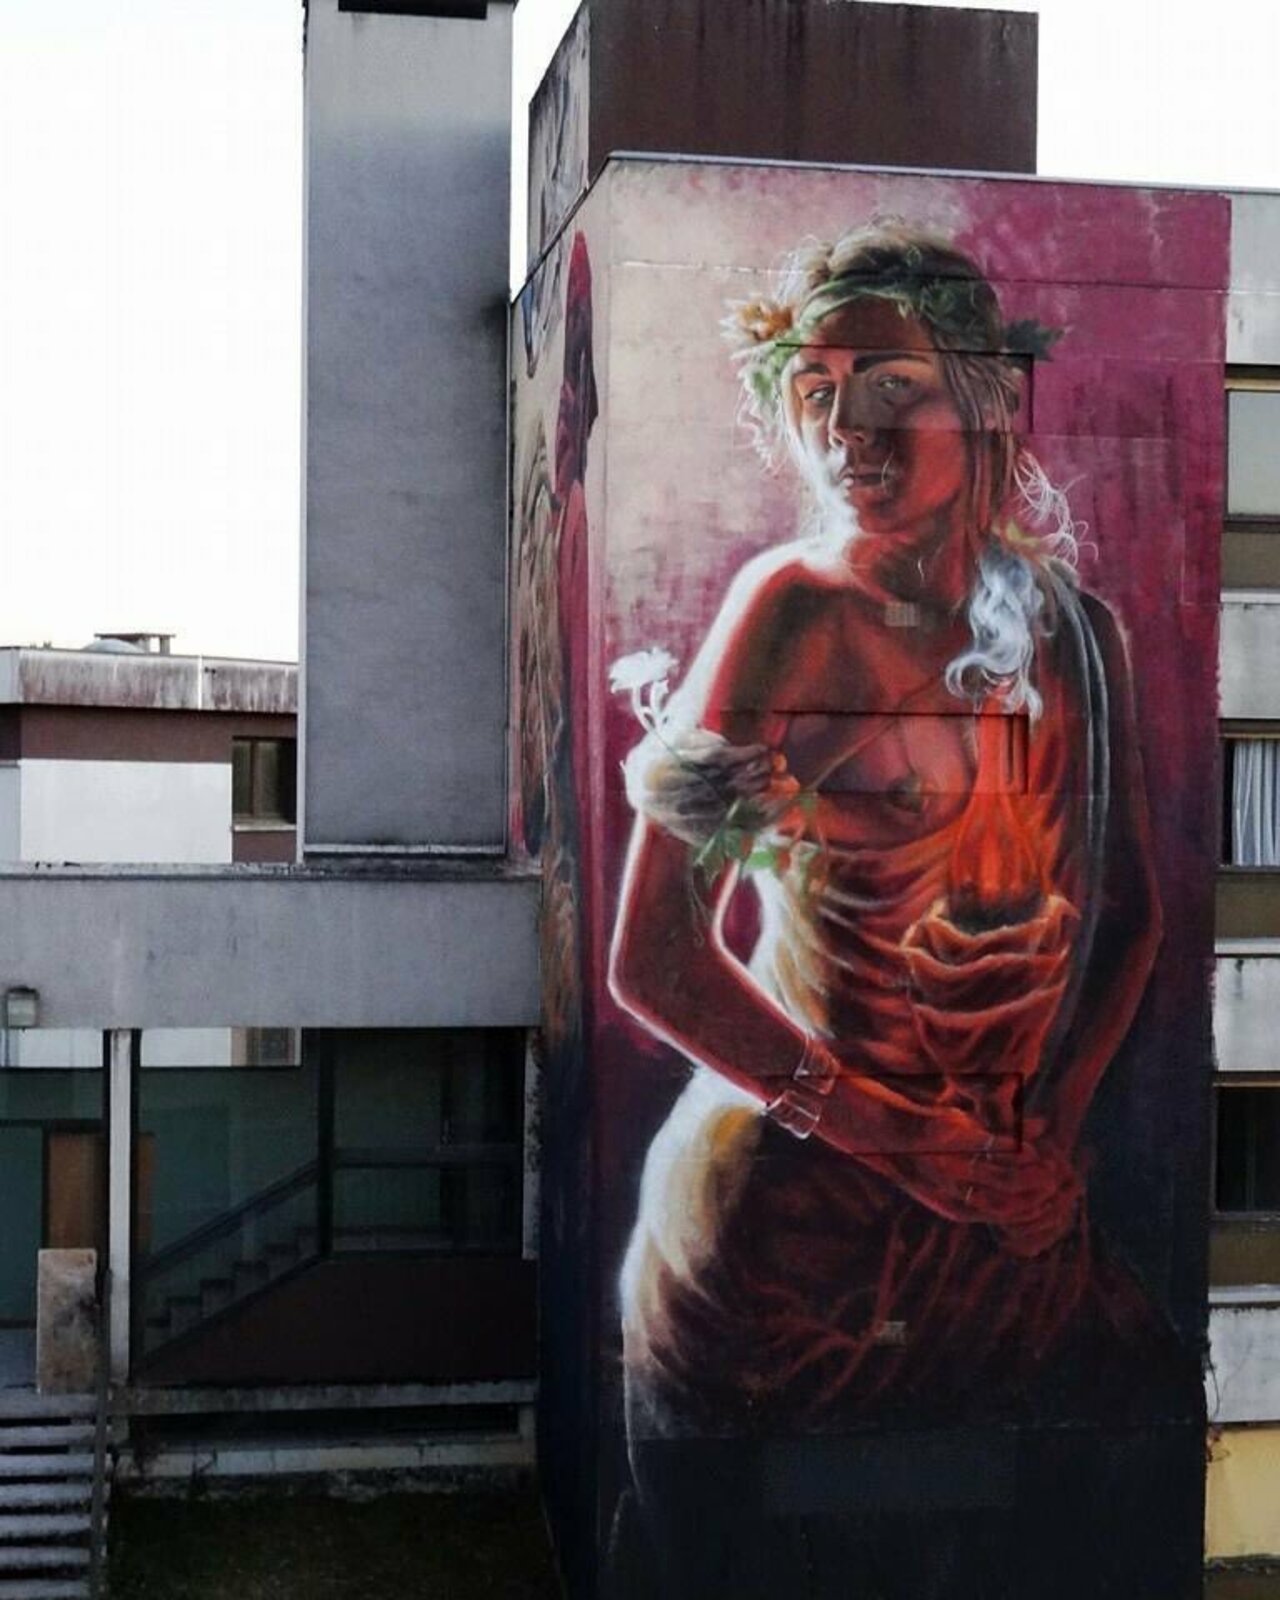 #mural by AlaniZ Art #art #graffiti #streetart https://t.co/oz18vo1ydf